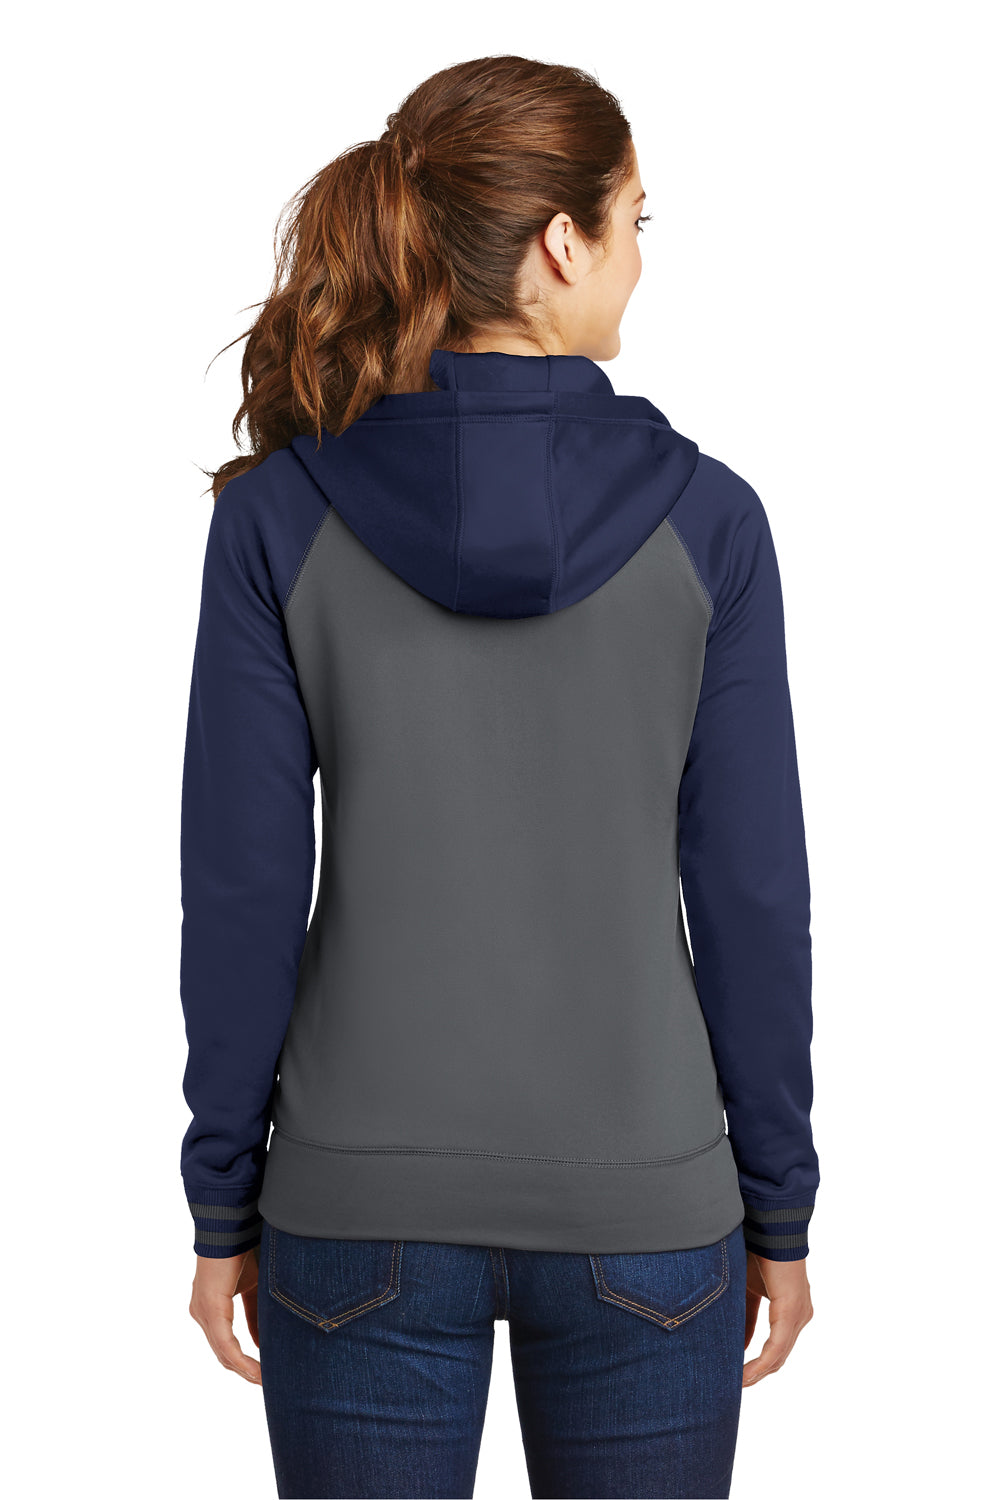 Sport-Tek LST236 Womens Sport-Wick Moisture Wicking Fleece Hooded Sweatshirt Hoodie Dark Grey/Navy Blue Back